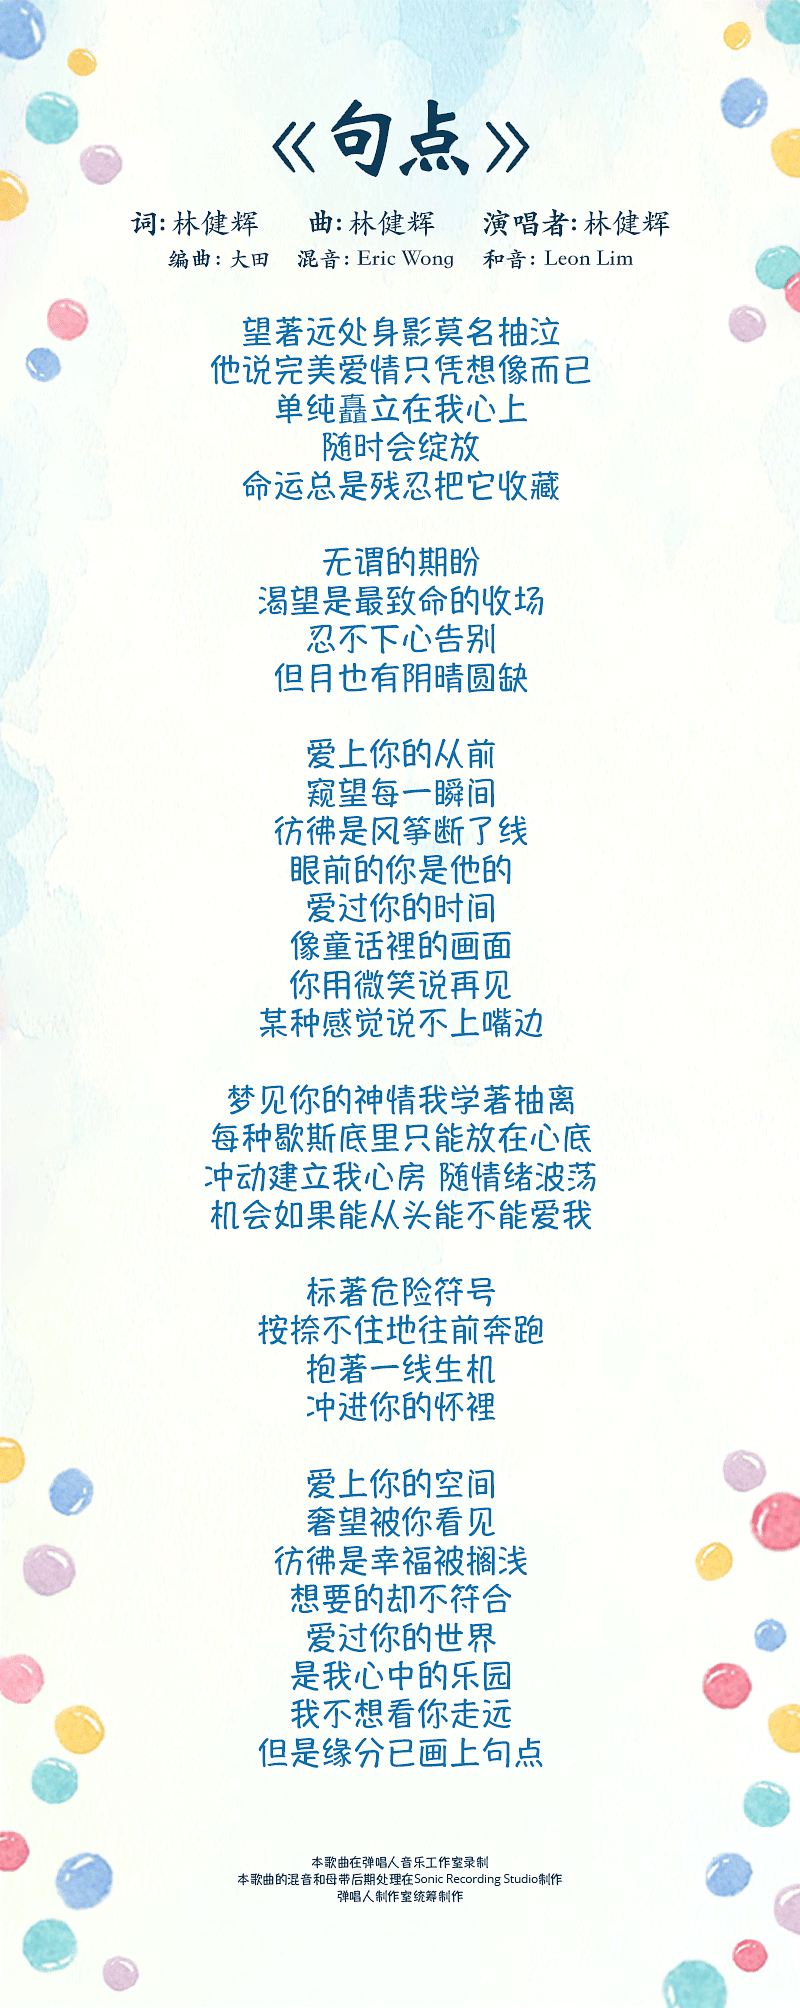 ju-dian-lyrics-mobile3.png